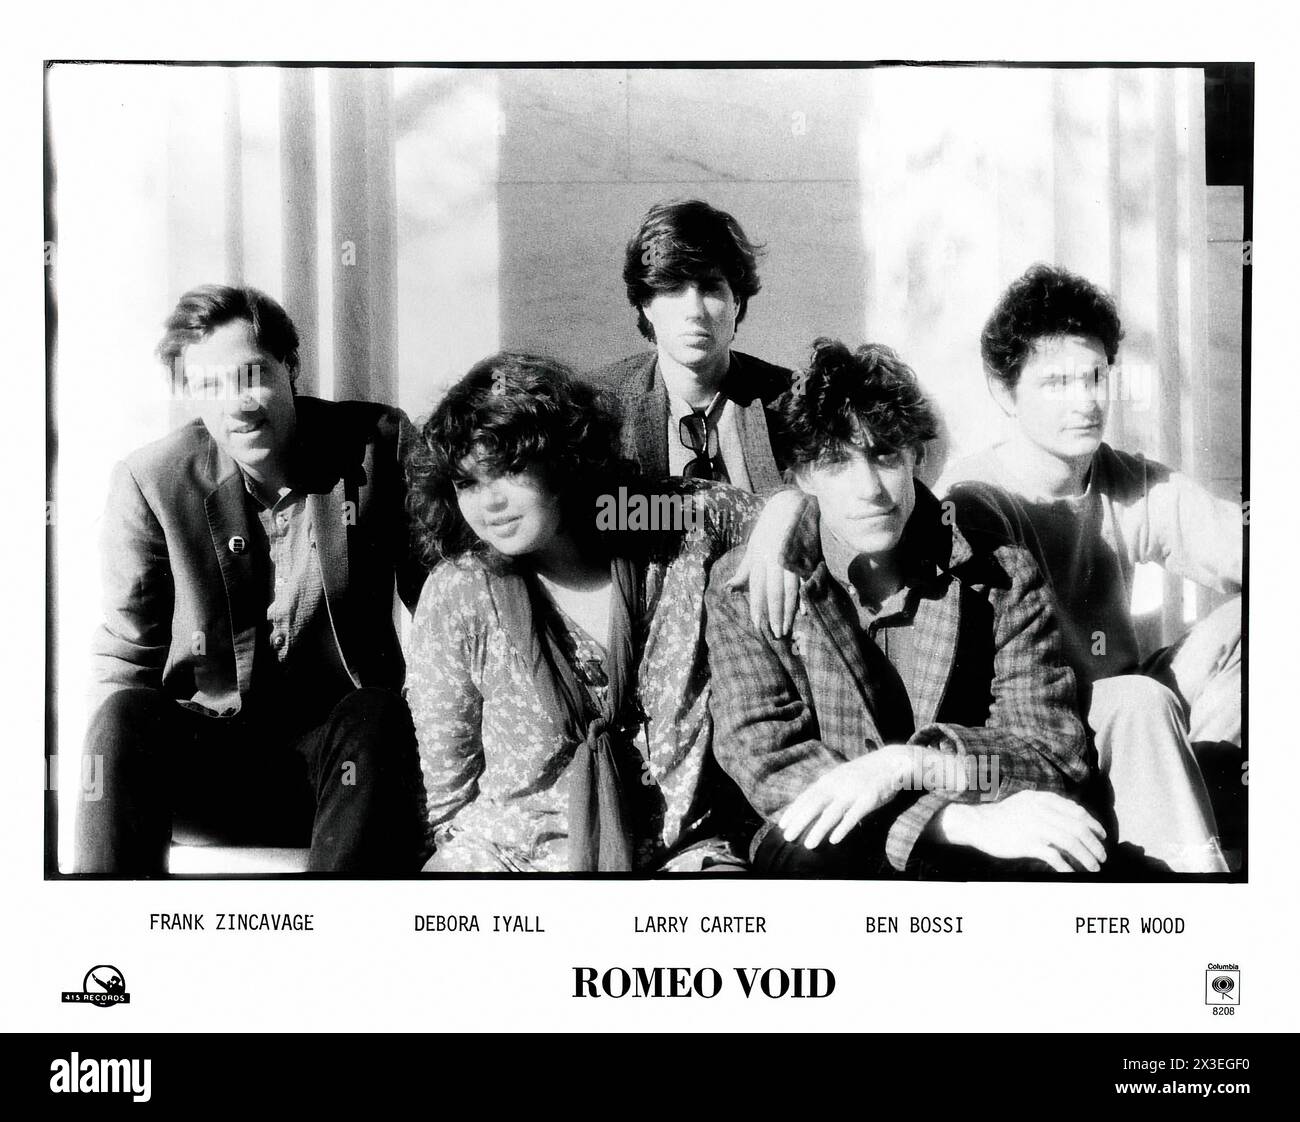 Romeo Void Press photo - photo promotionnelle de label de musique vintage - photographe inconnu, pour usage éditorial seulement Banque D'Images